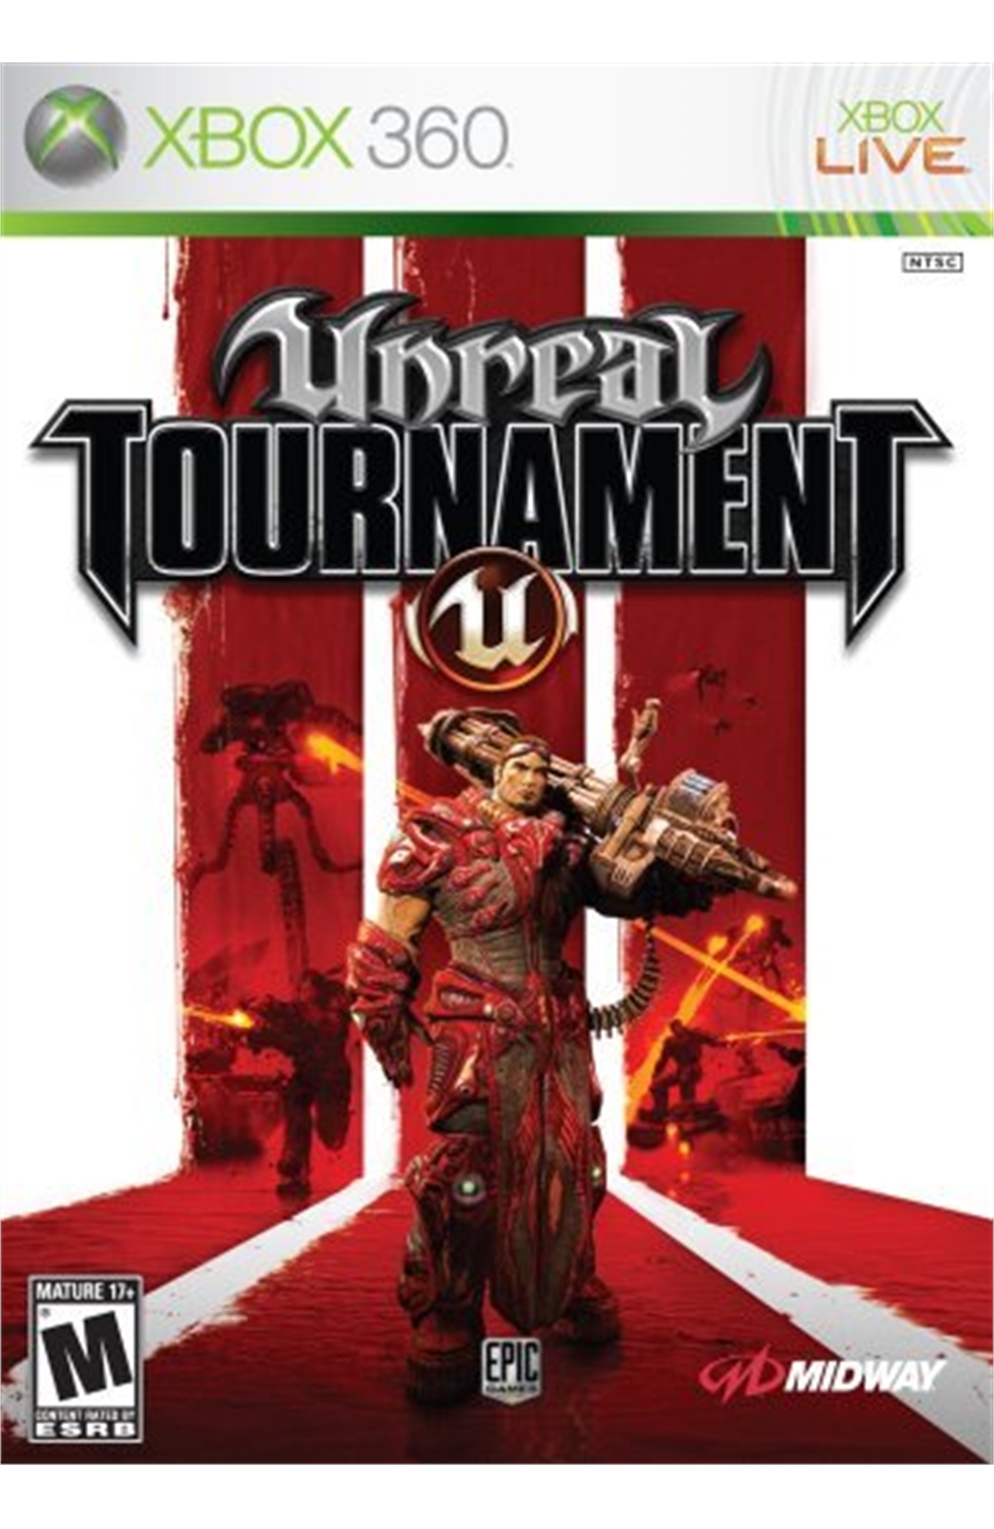 Xbox 360 Xb360 Unreal Tournament III 